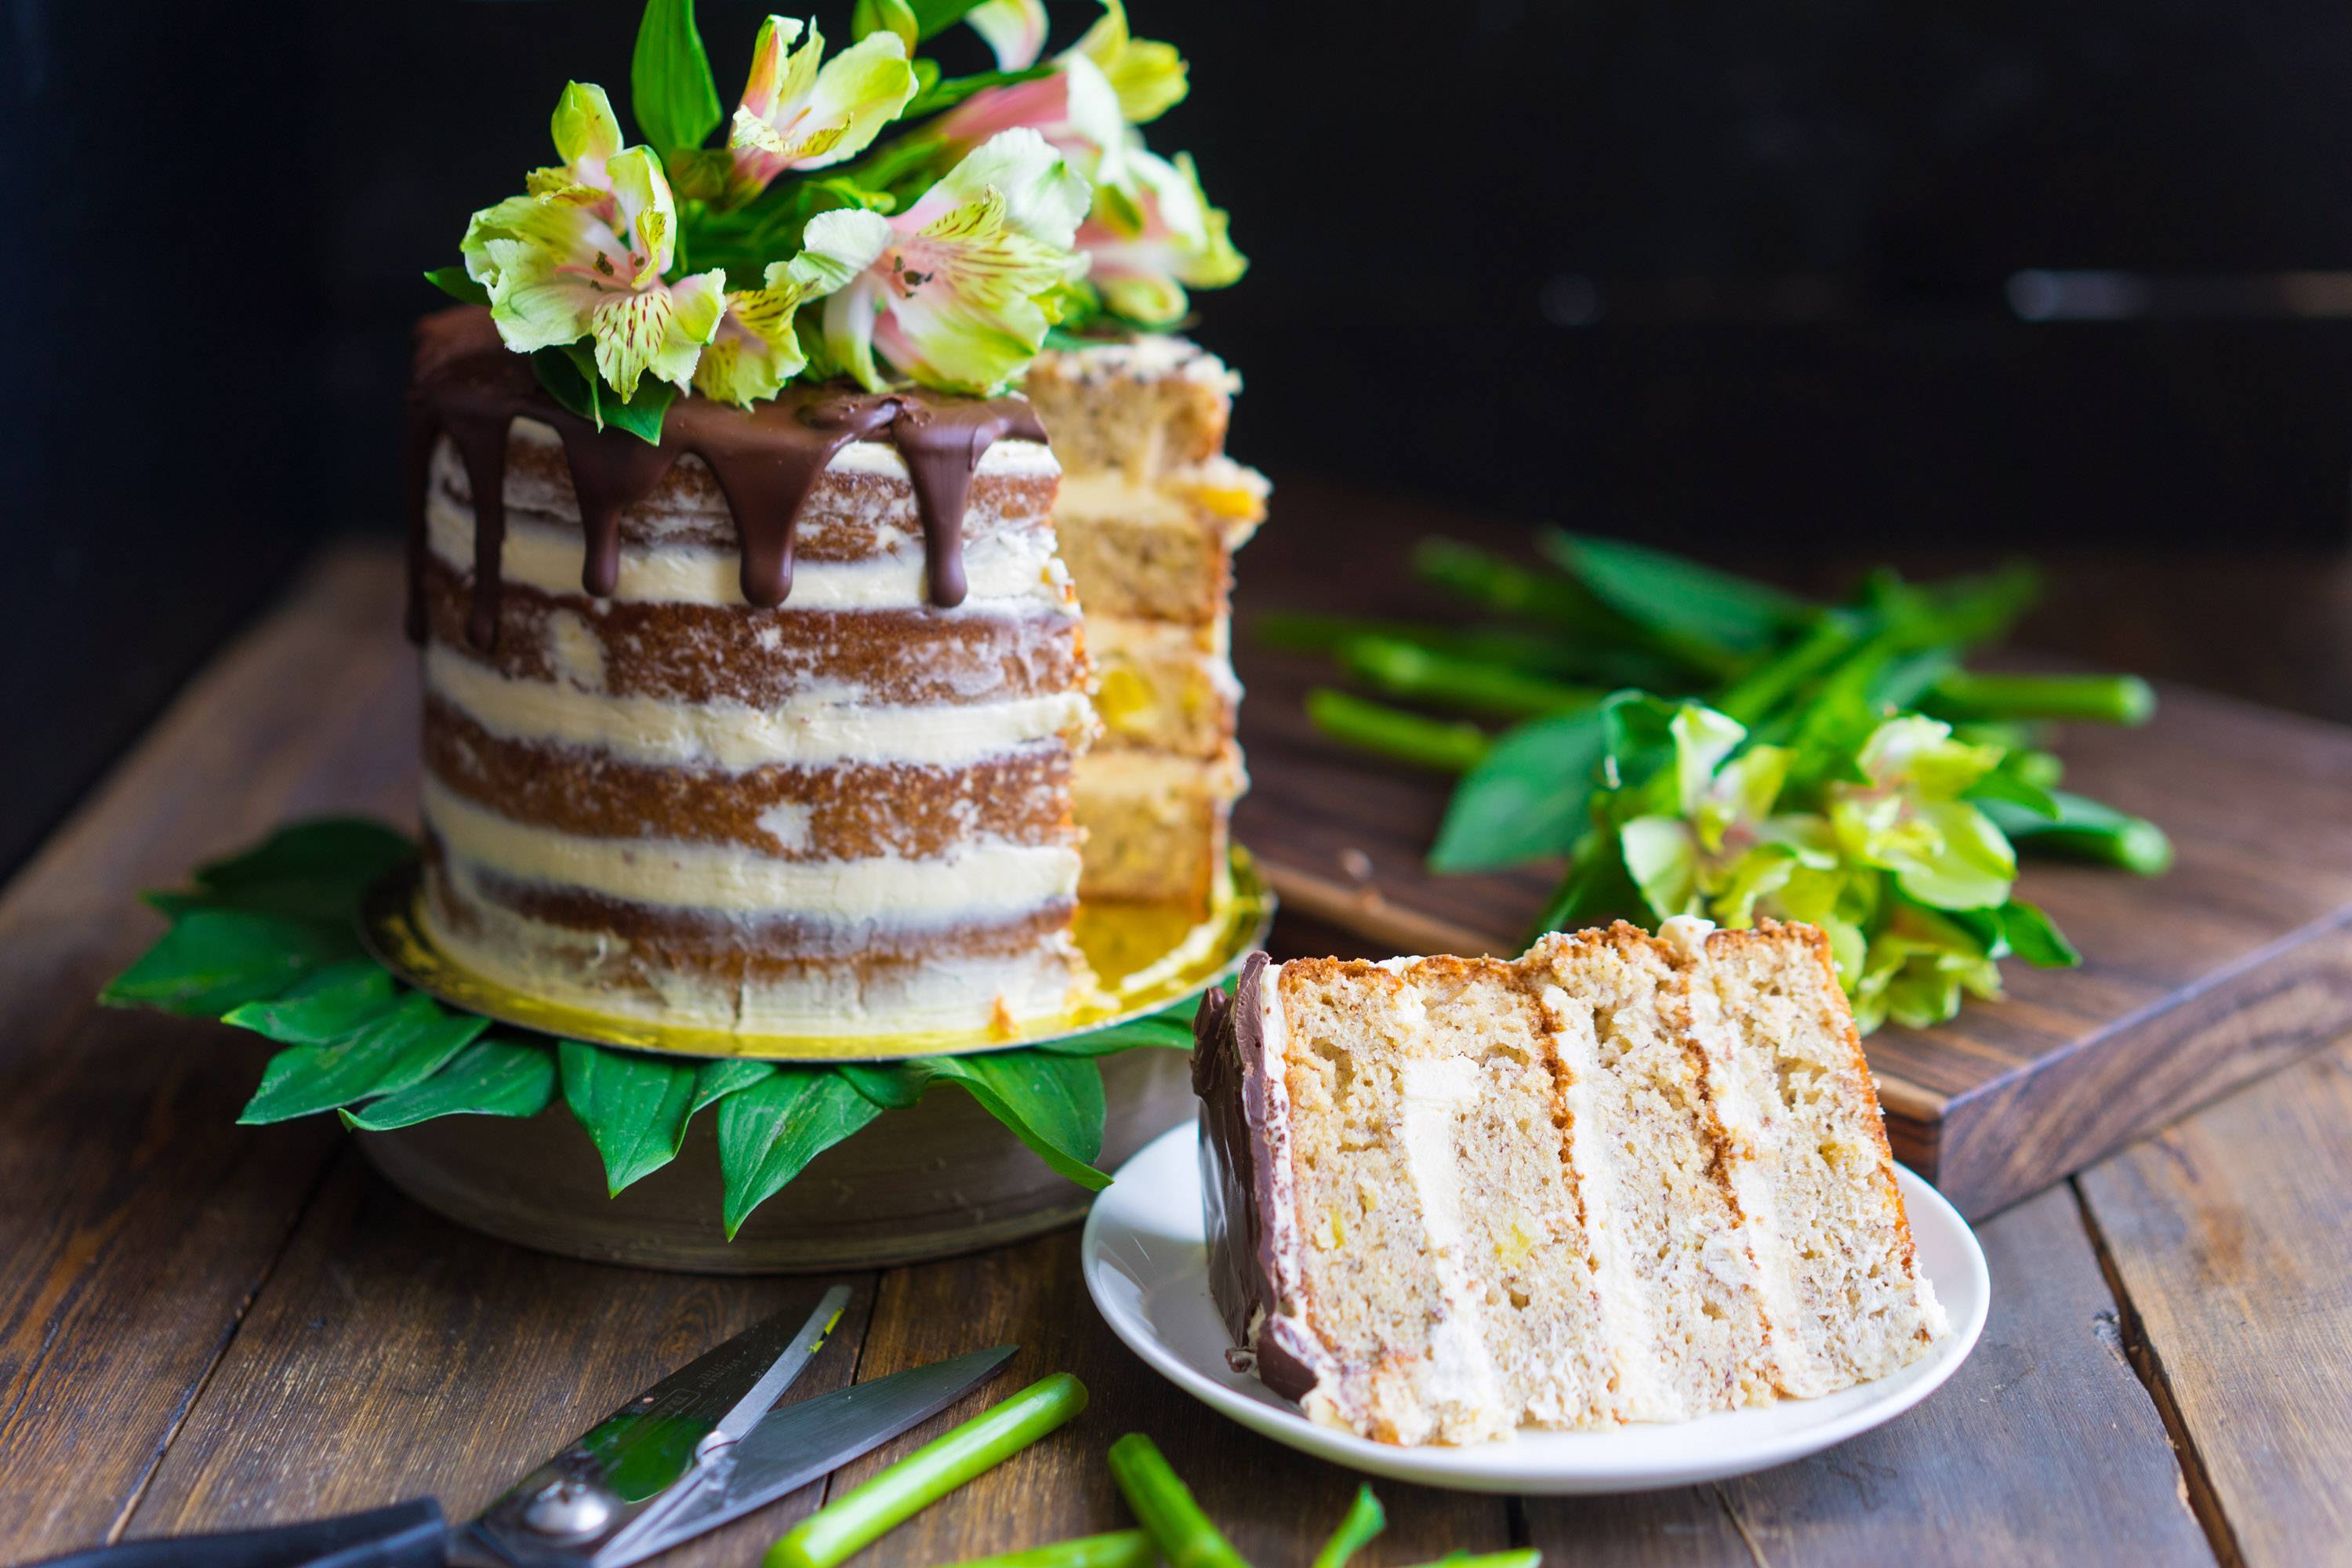 Как приготовить большой голый торт с цветами, торт с бананами и ананасом, торт колибри, украшение торта цветами, пошаговый рецепт с фото, блог andychef.ru